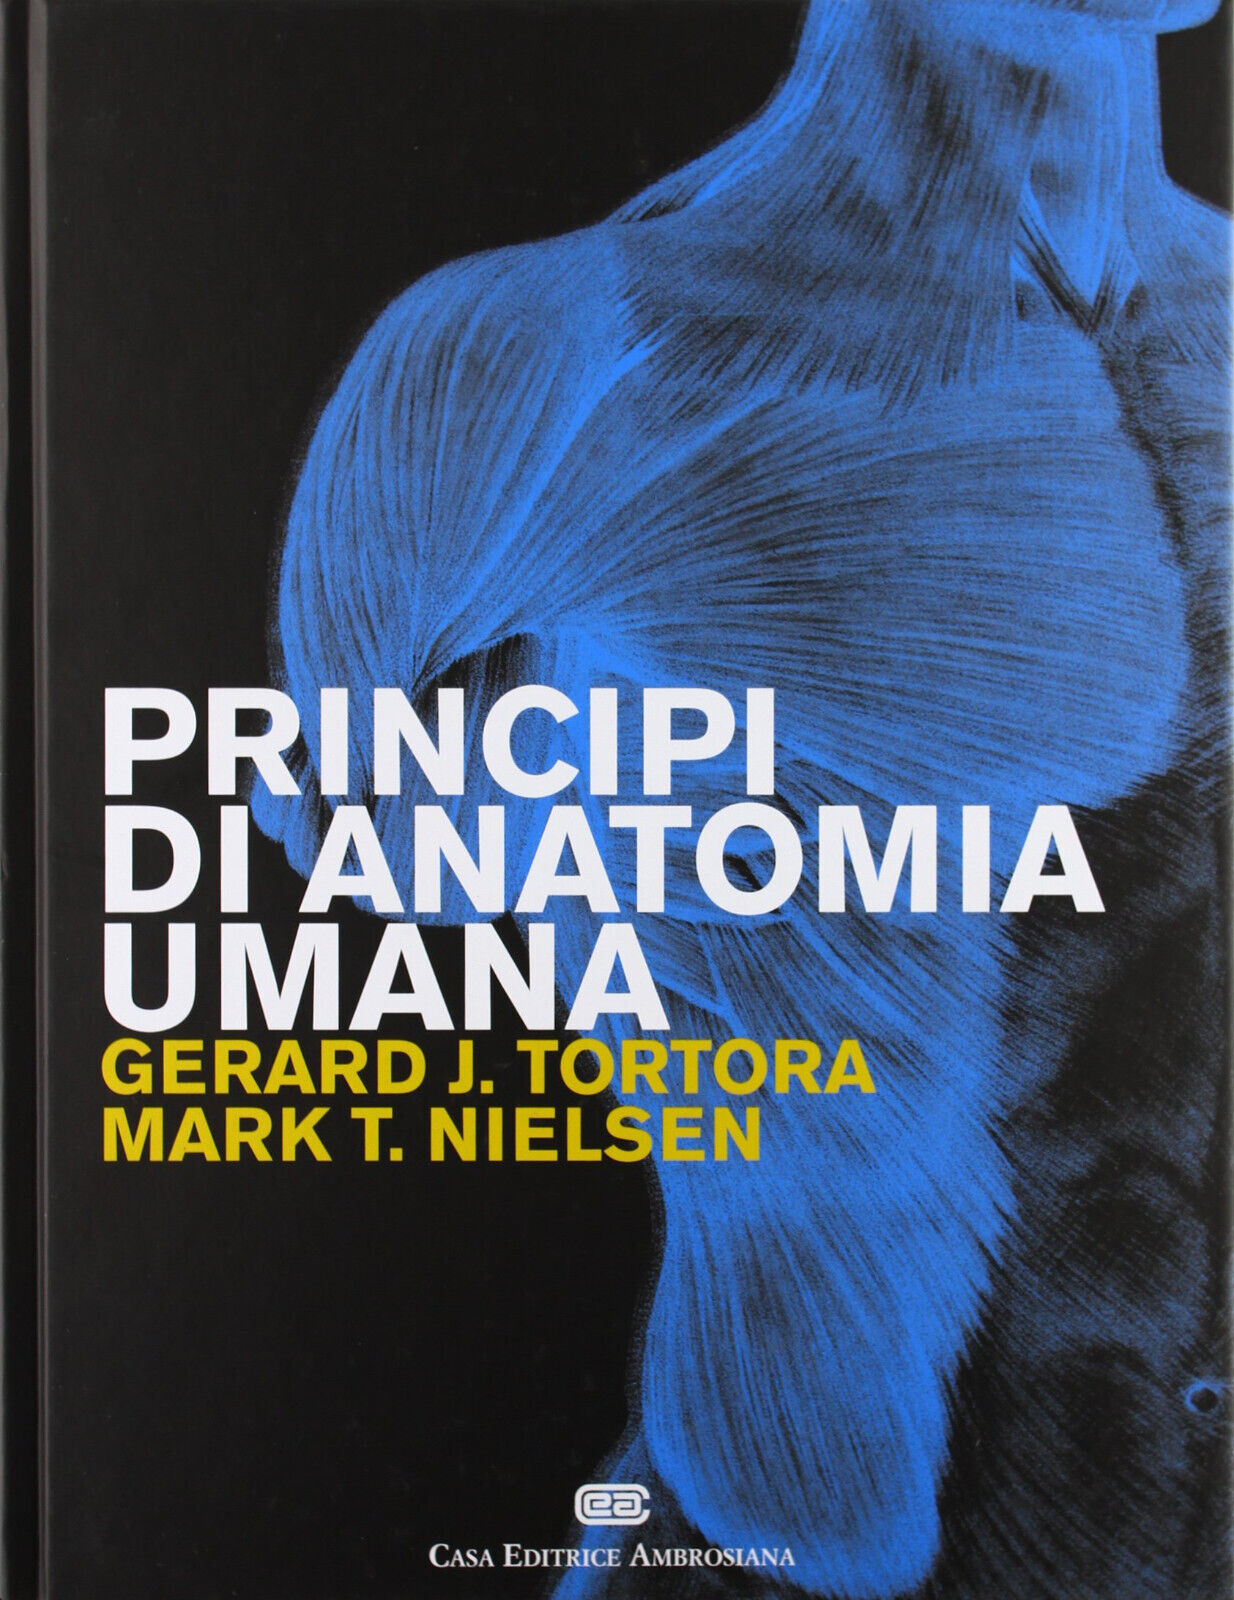 Principi di anatomia umana - Gerard J. Tortora, Mark T. Nielsen - CEA, 2012